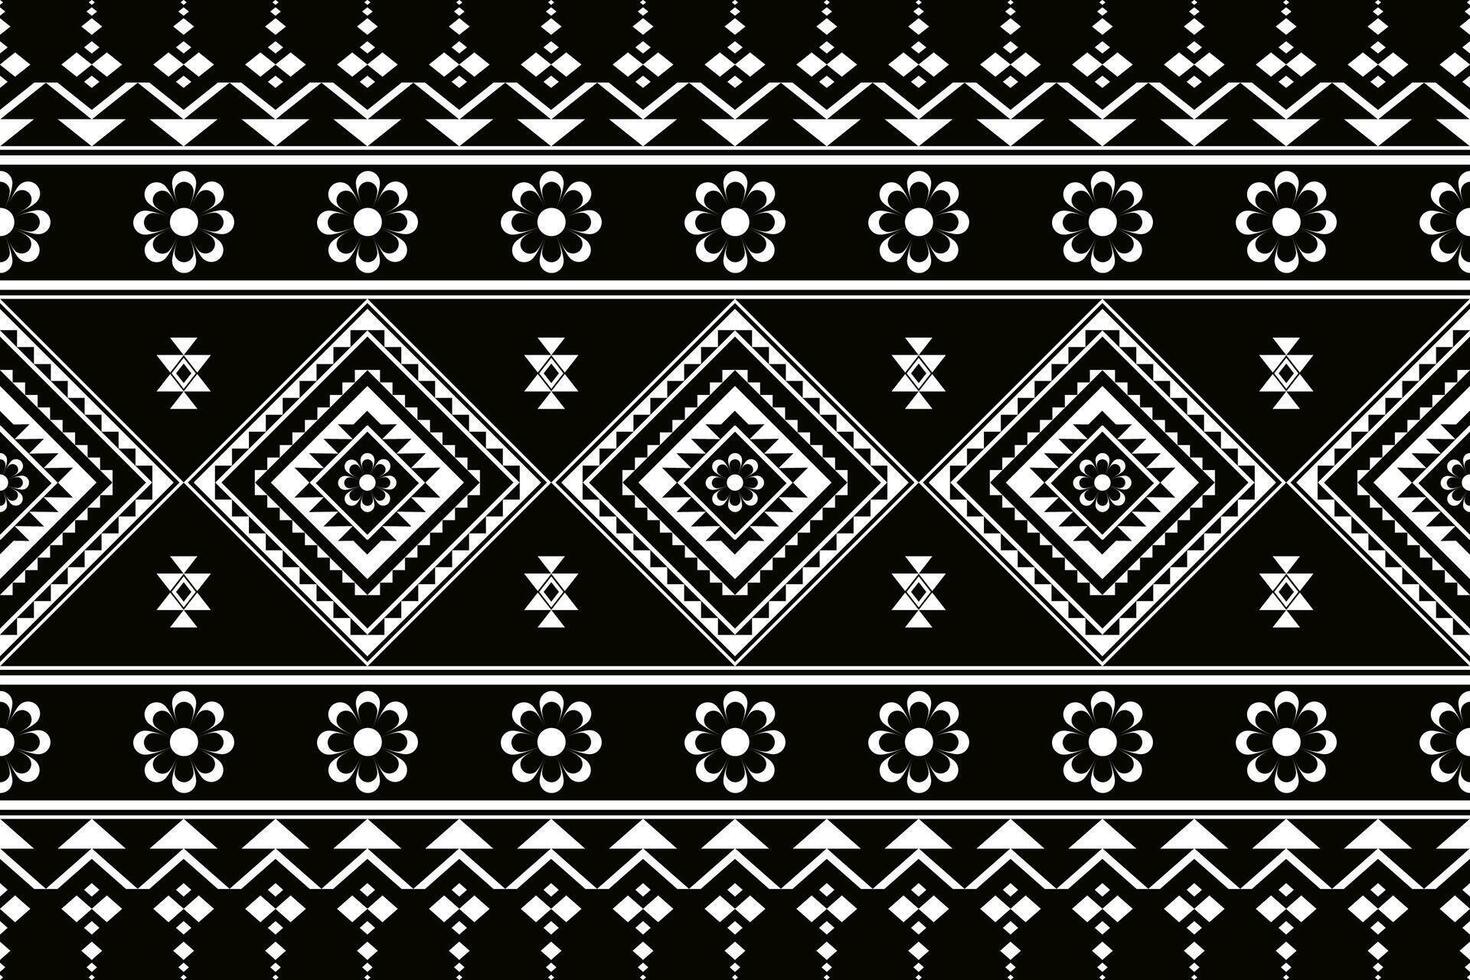 meetkundig naadloos etnisch patroon zwart en wit kleur. meetkundig etnisch patroon kan worden gebruikt in kleding stof ontwerp voor kleren, inpakken, textiel, borduurwerk, tapijt, tribal patroon vector